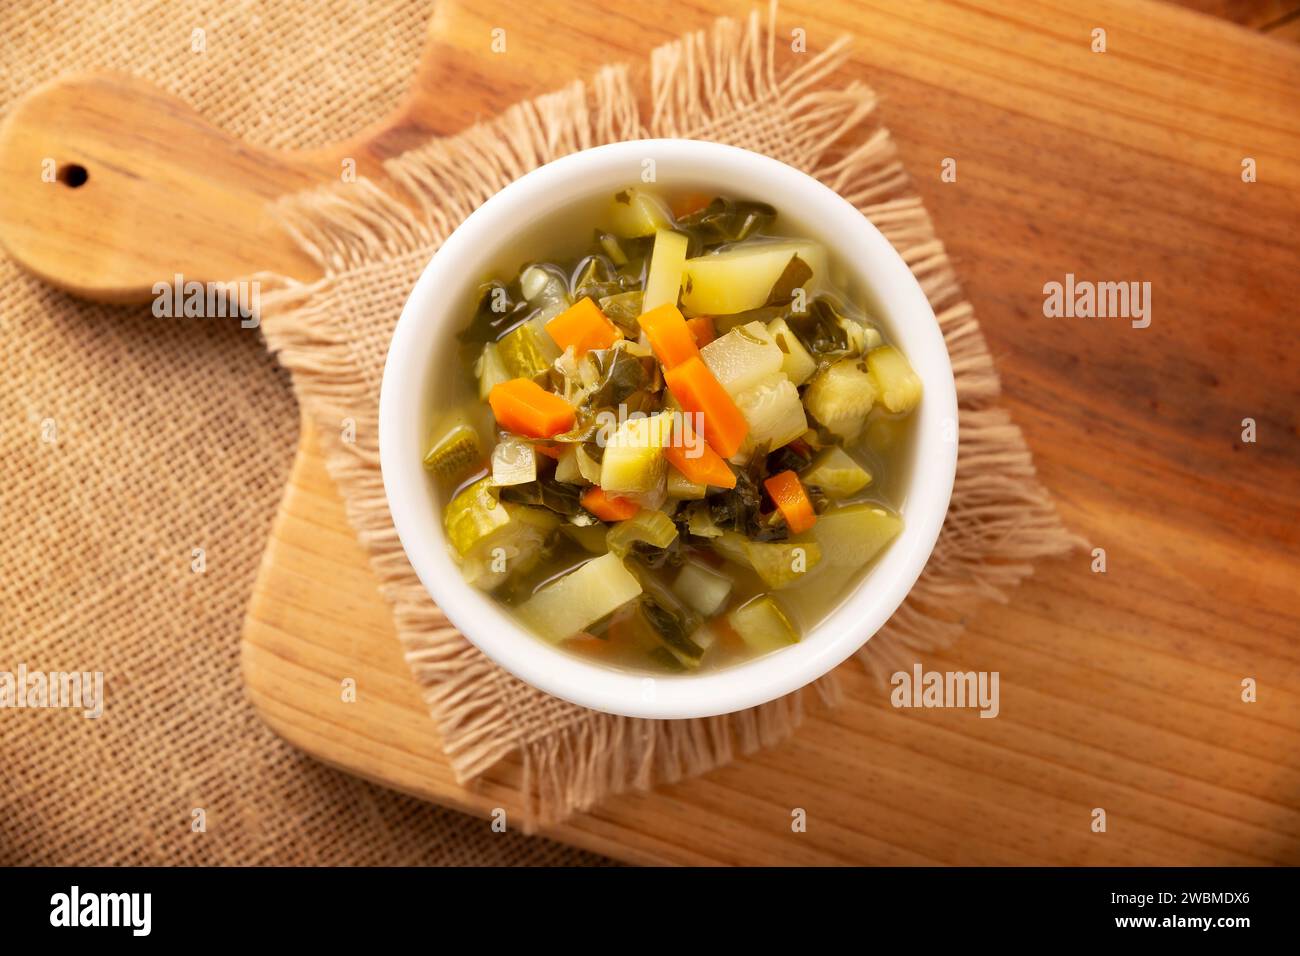 Soupe de légumes frais maison, recette facile faite avec des légumes hachés, carotte, céleri, citrouille, épinards, chayote et autres ingrédients, plat sain Banque D'Images